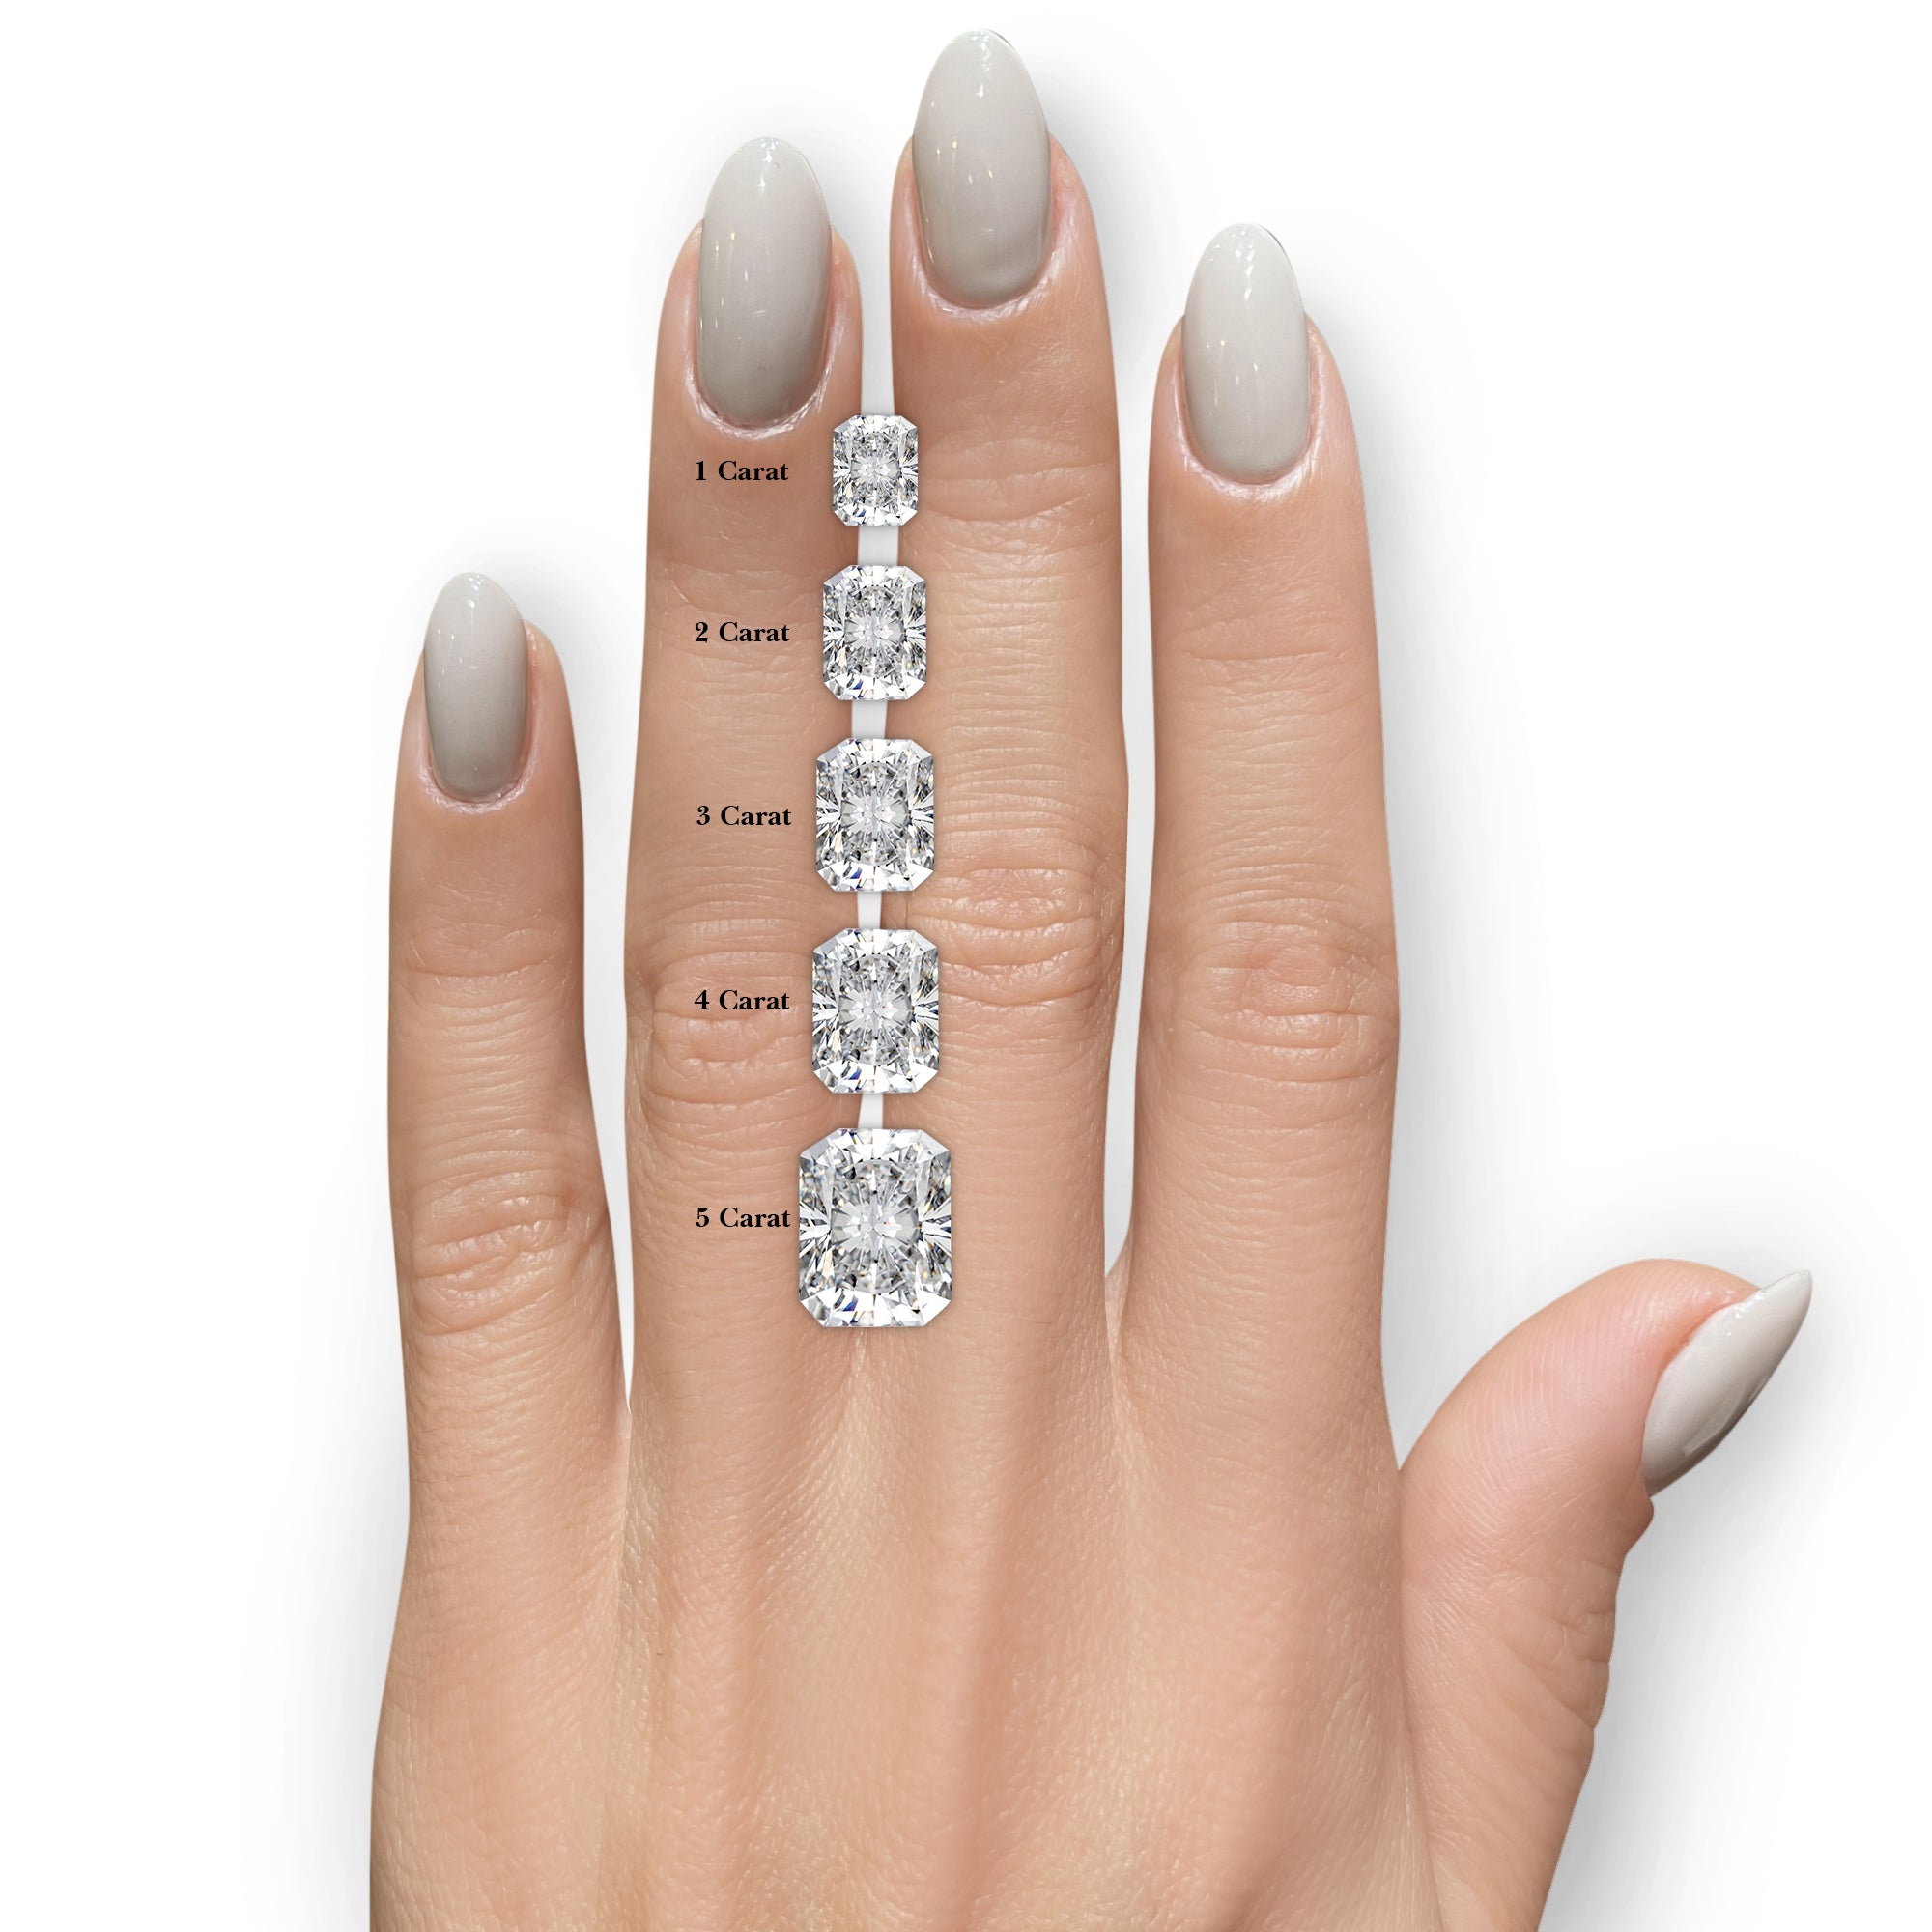 Andrea Moissanite & Diamonds Ring -14K White Gold